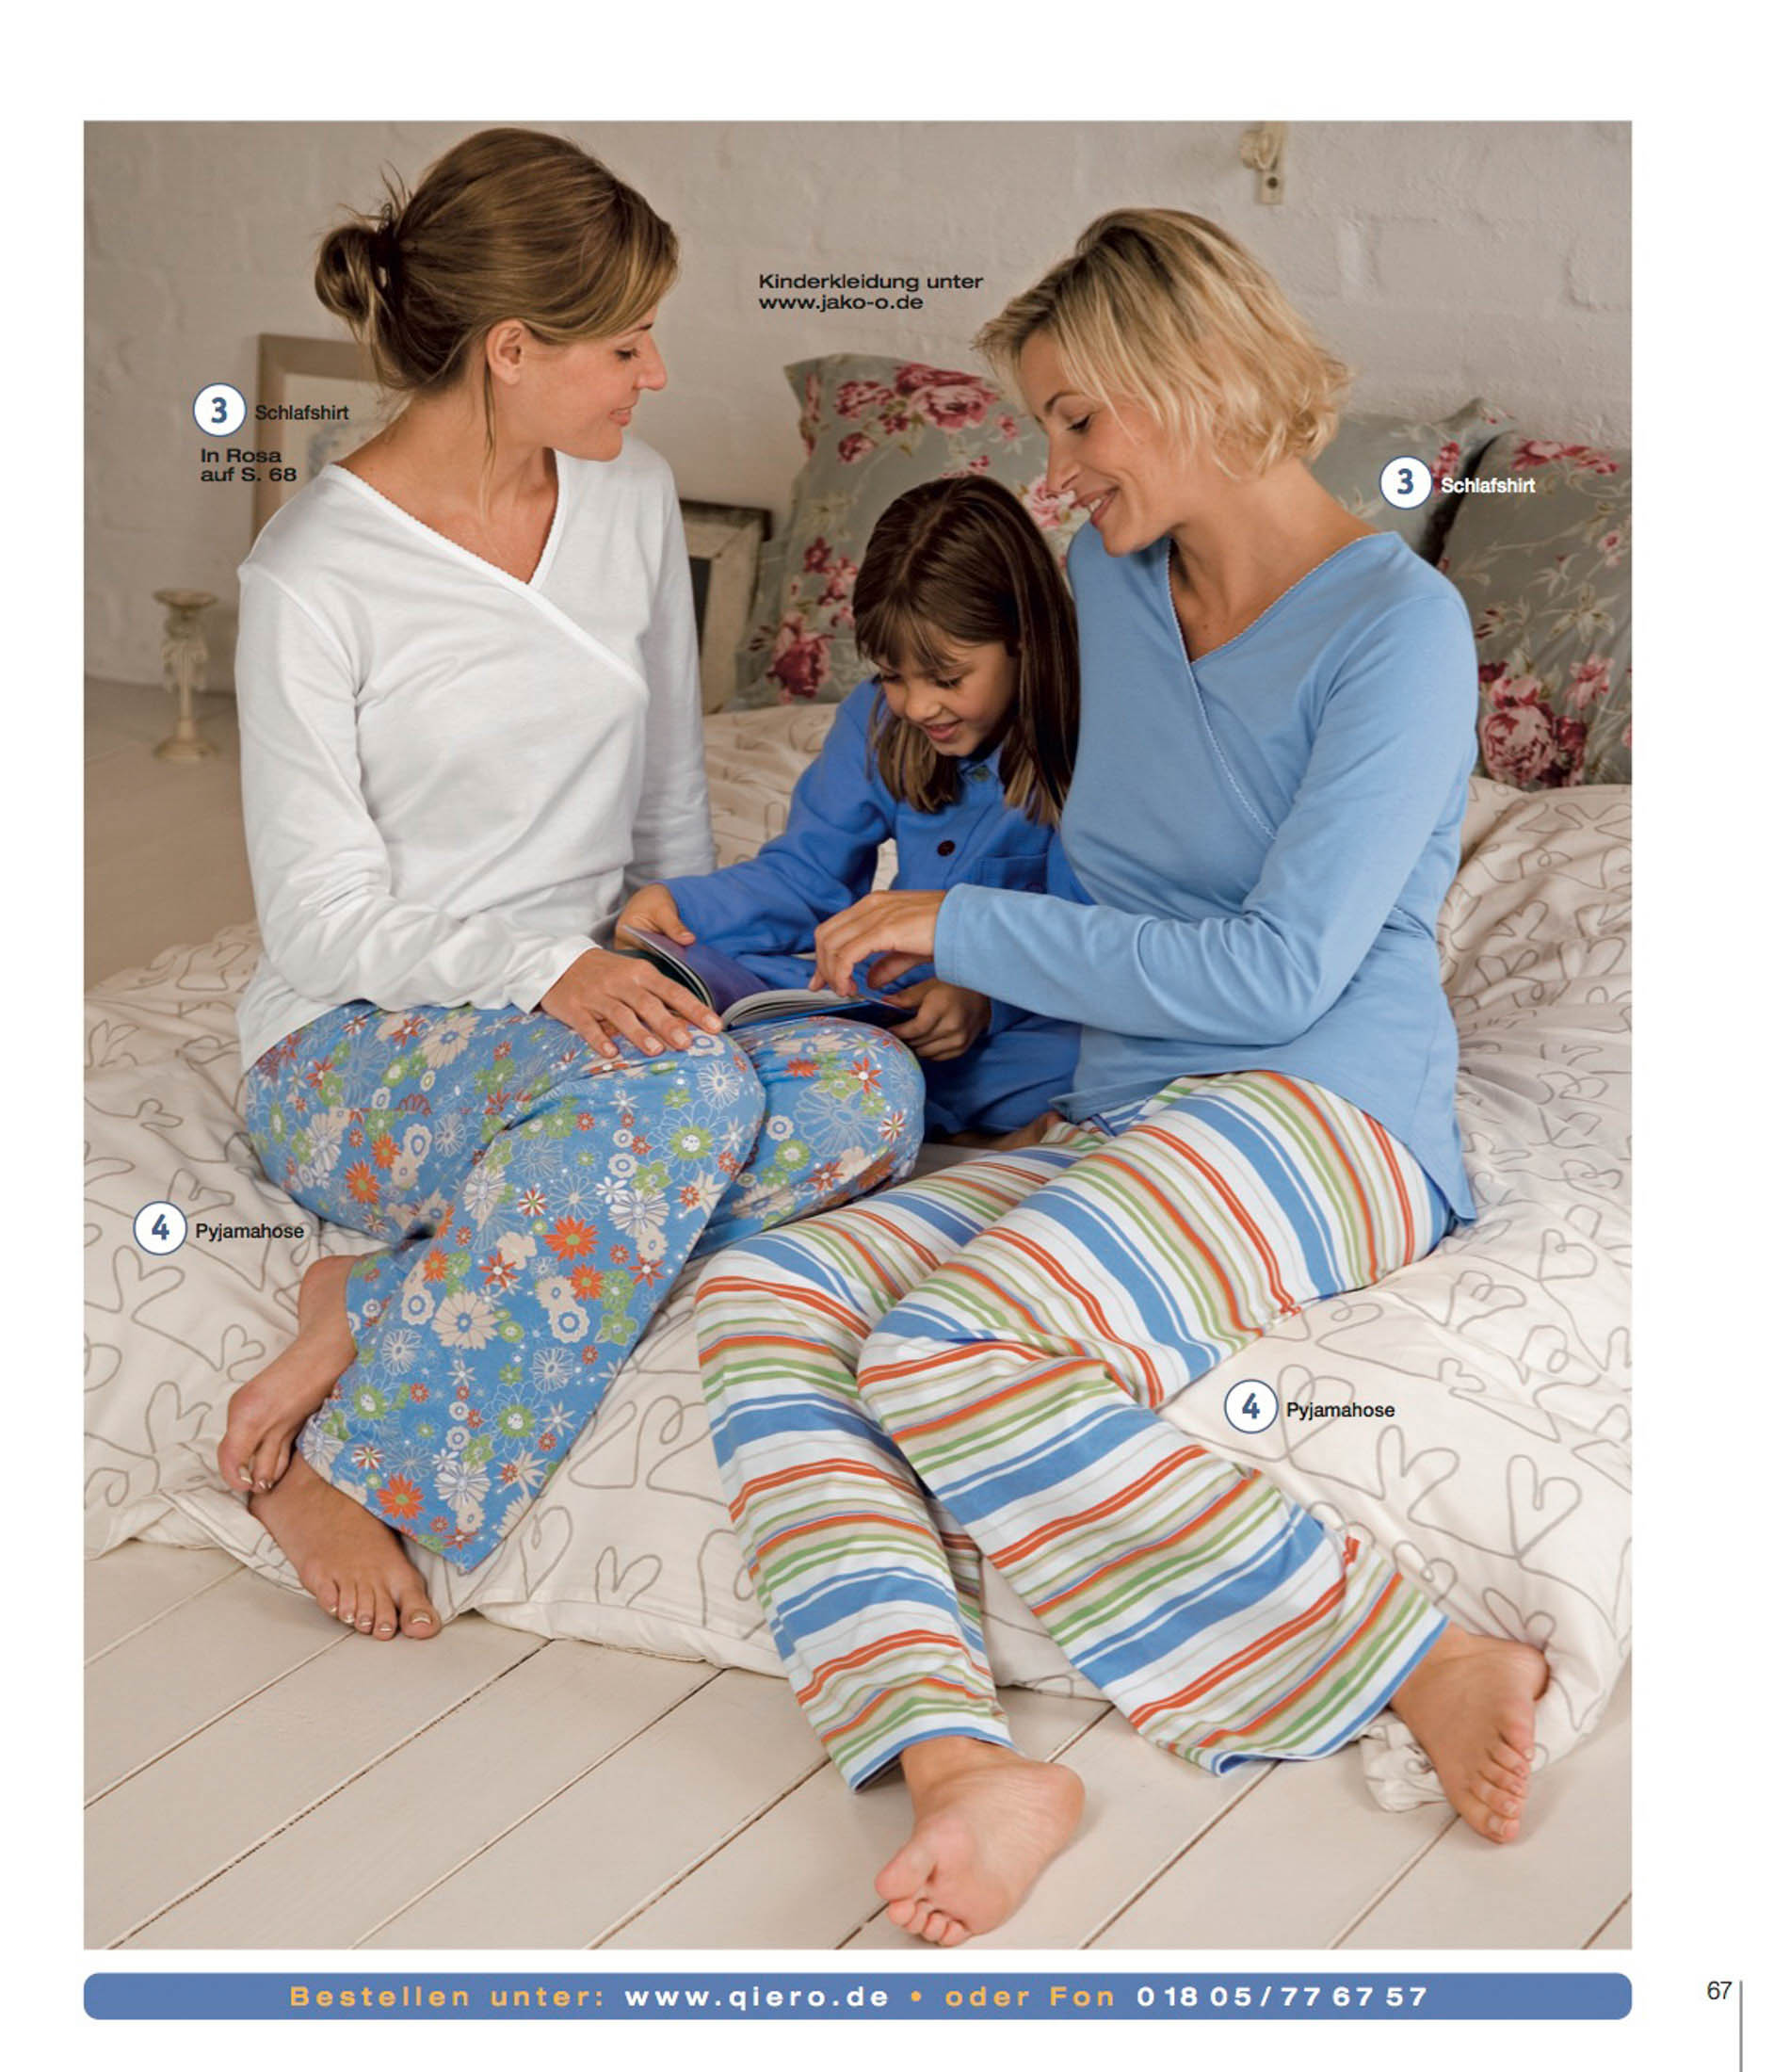 Drei Menschen im Pyjama sitzen auf einem Bett, die mittlere Person hält ein Buch, und interagieren fröhlich in einer Schlafzimmerumgebung. Zwei Erwachsene und ein Kind strahlen eine warme, familiäre Atmosphäre aus. © Fotografie Tomas Rodriguez